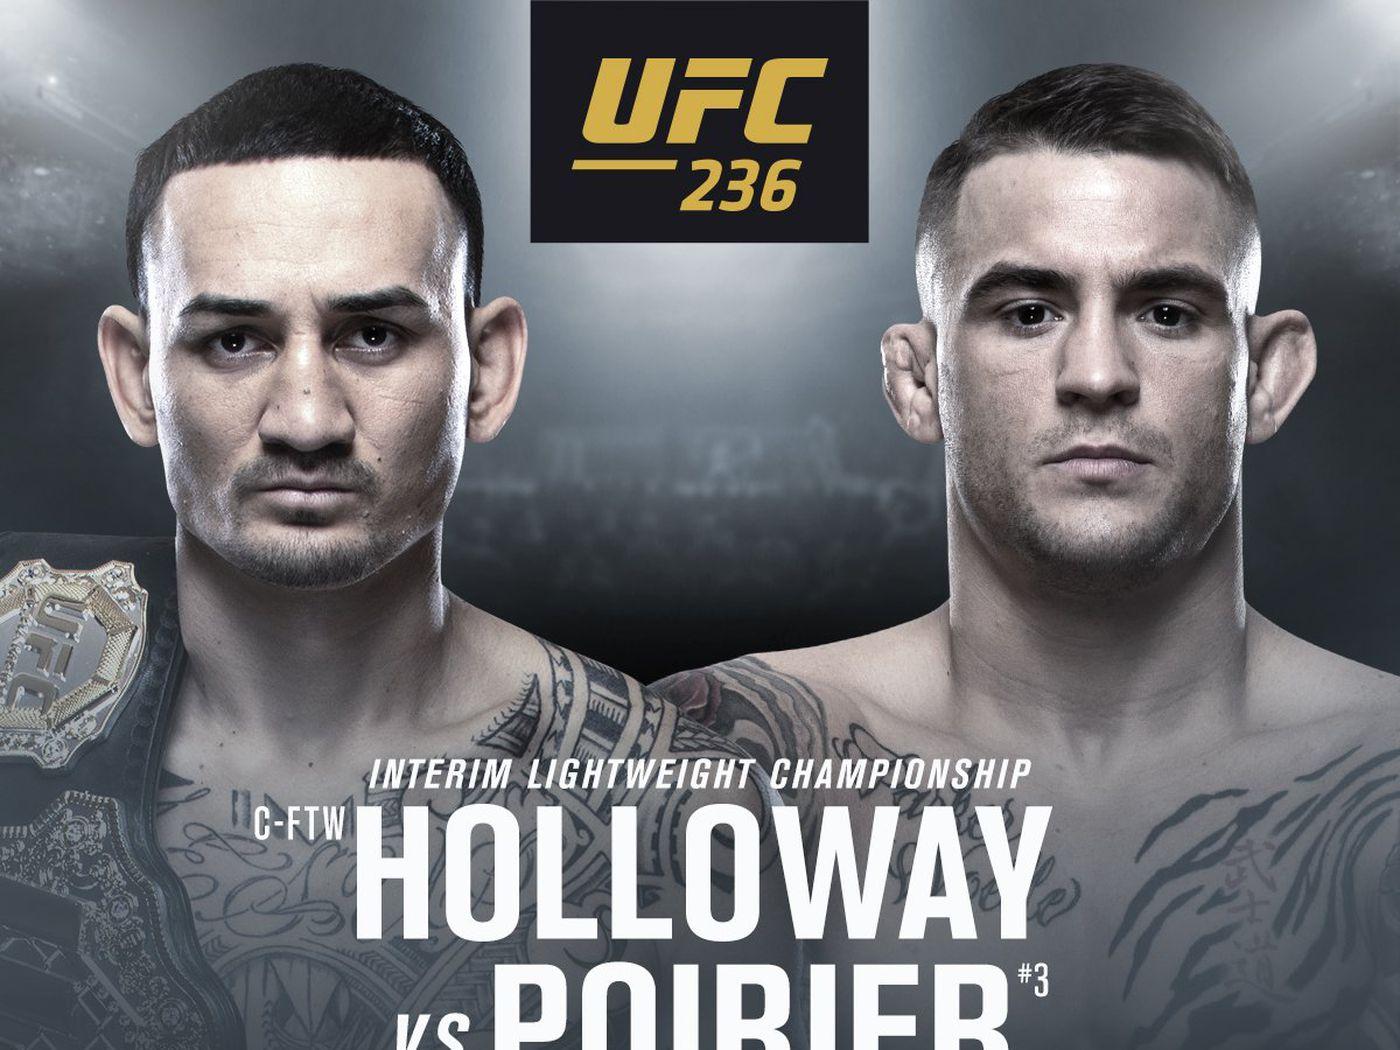 Latest UFC 236 fight card, rumors for 'Holloway vs Poirier 2' PPV